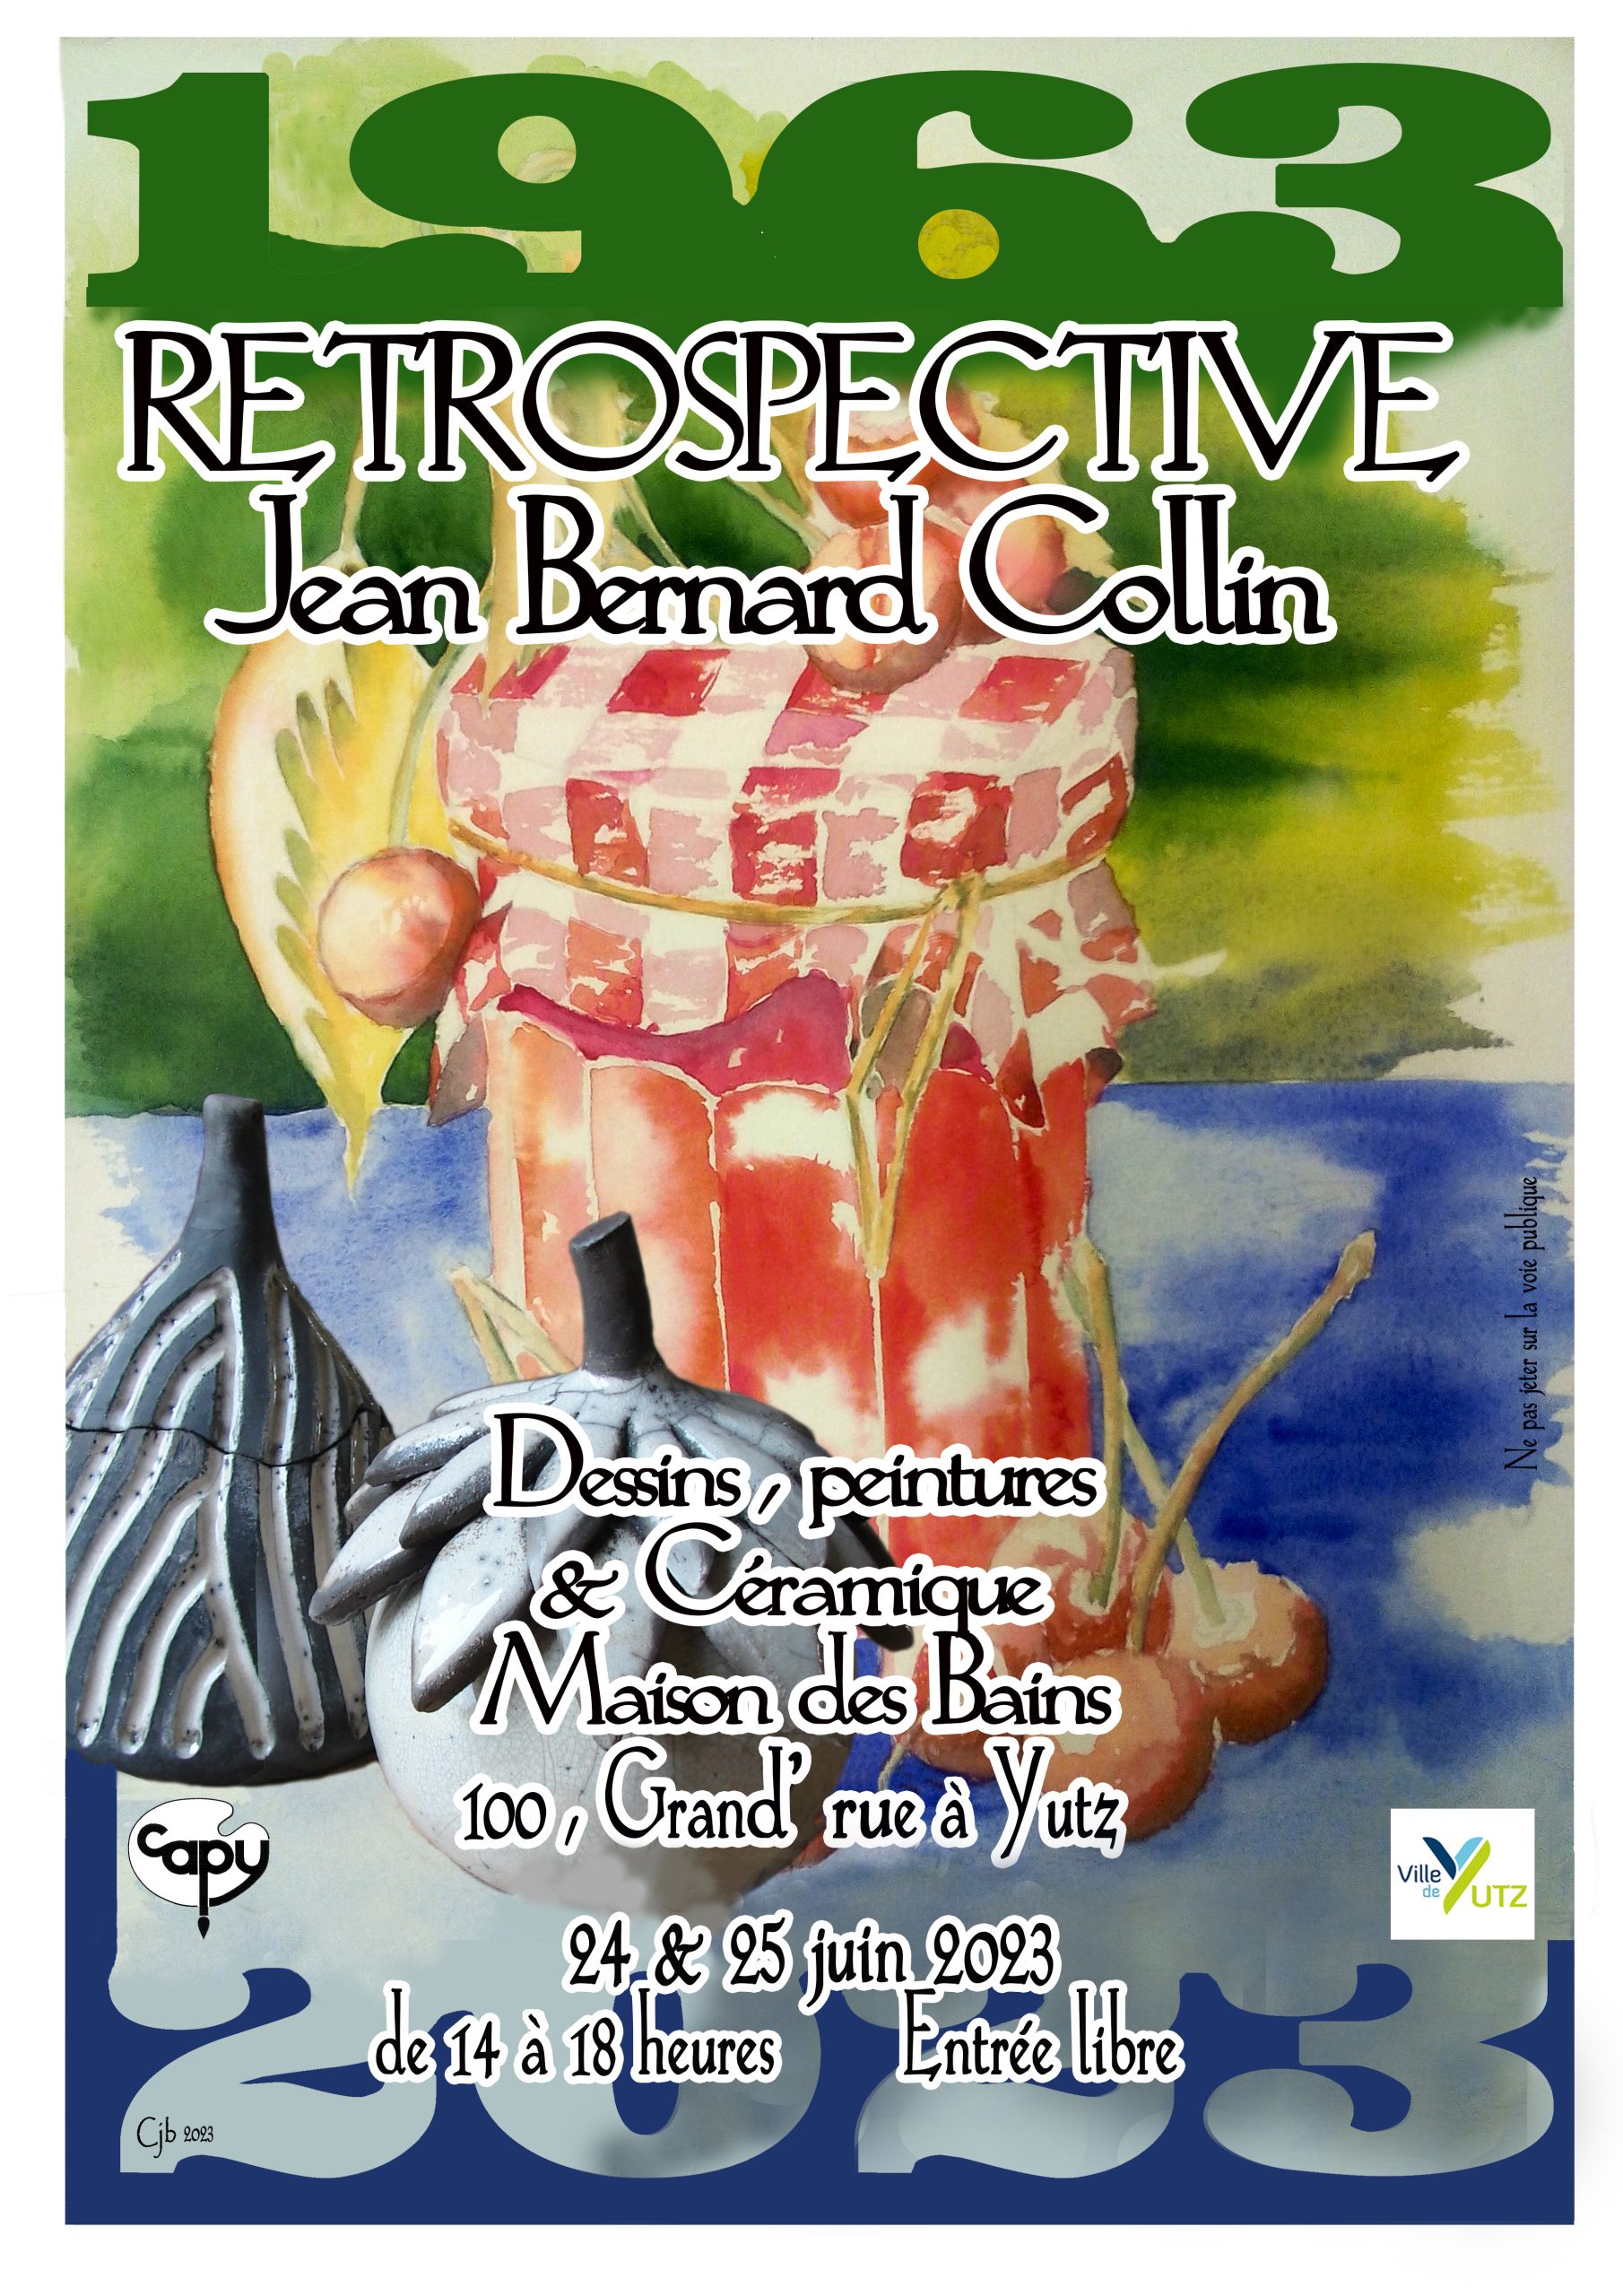 Retrospective of Jean Bernard Collin